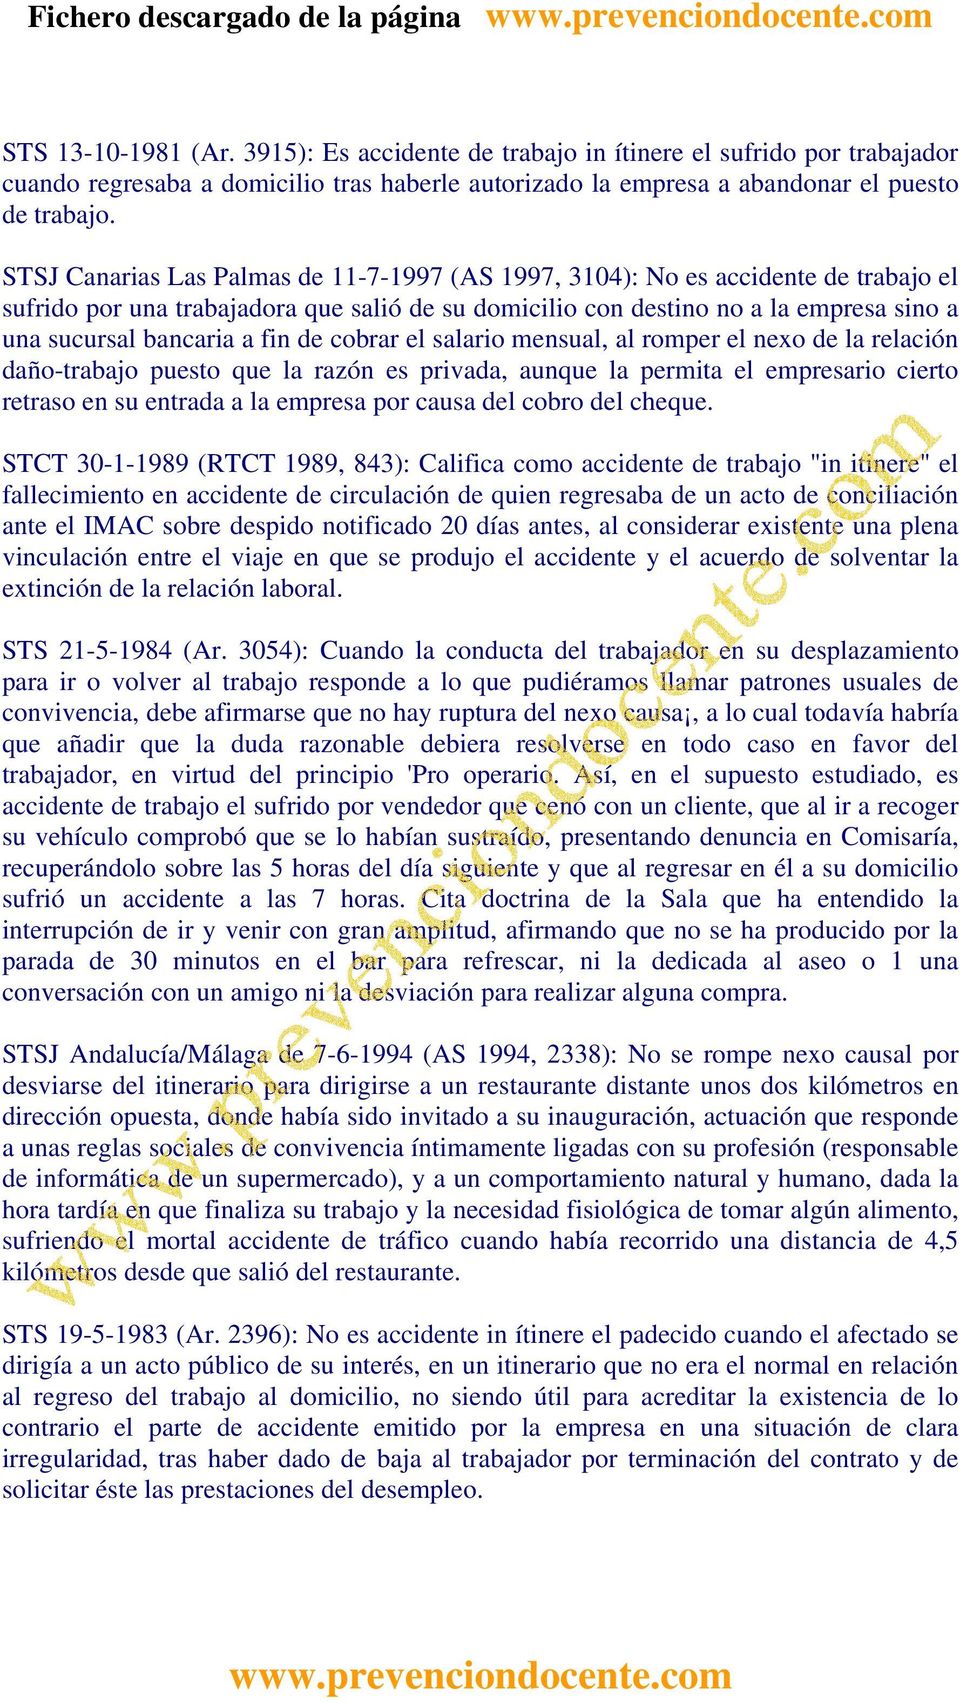 STSJ Canarias Las Palmas de 11-7-1997 (AS 1997, 3104): No es accidente de trabajo el sufrido por una trabajadora que salió de su domicilio con destino no a la empresa sino a una sucursal bancaria a